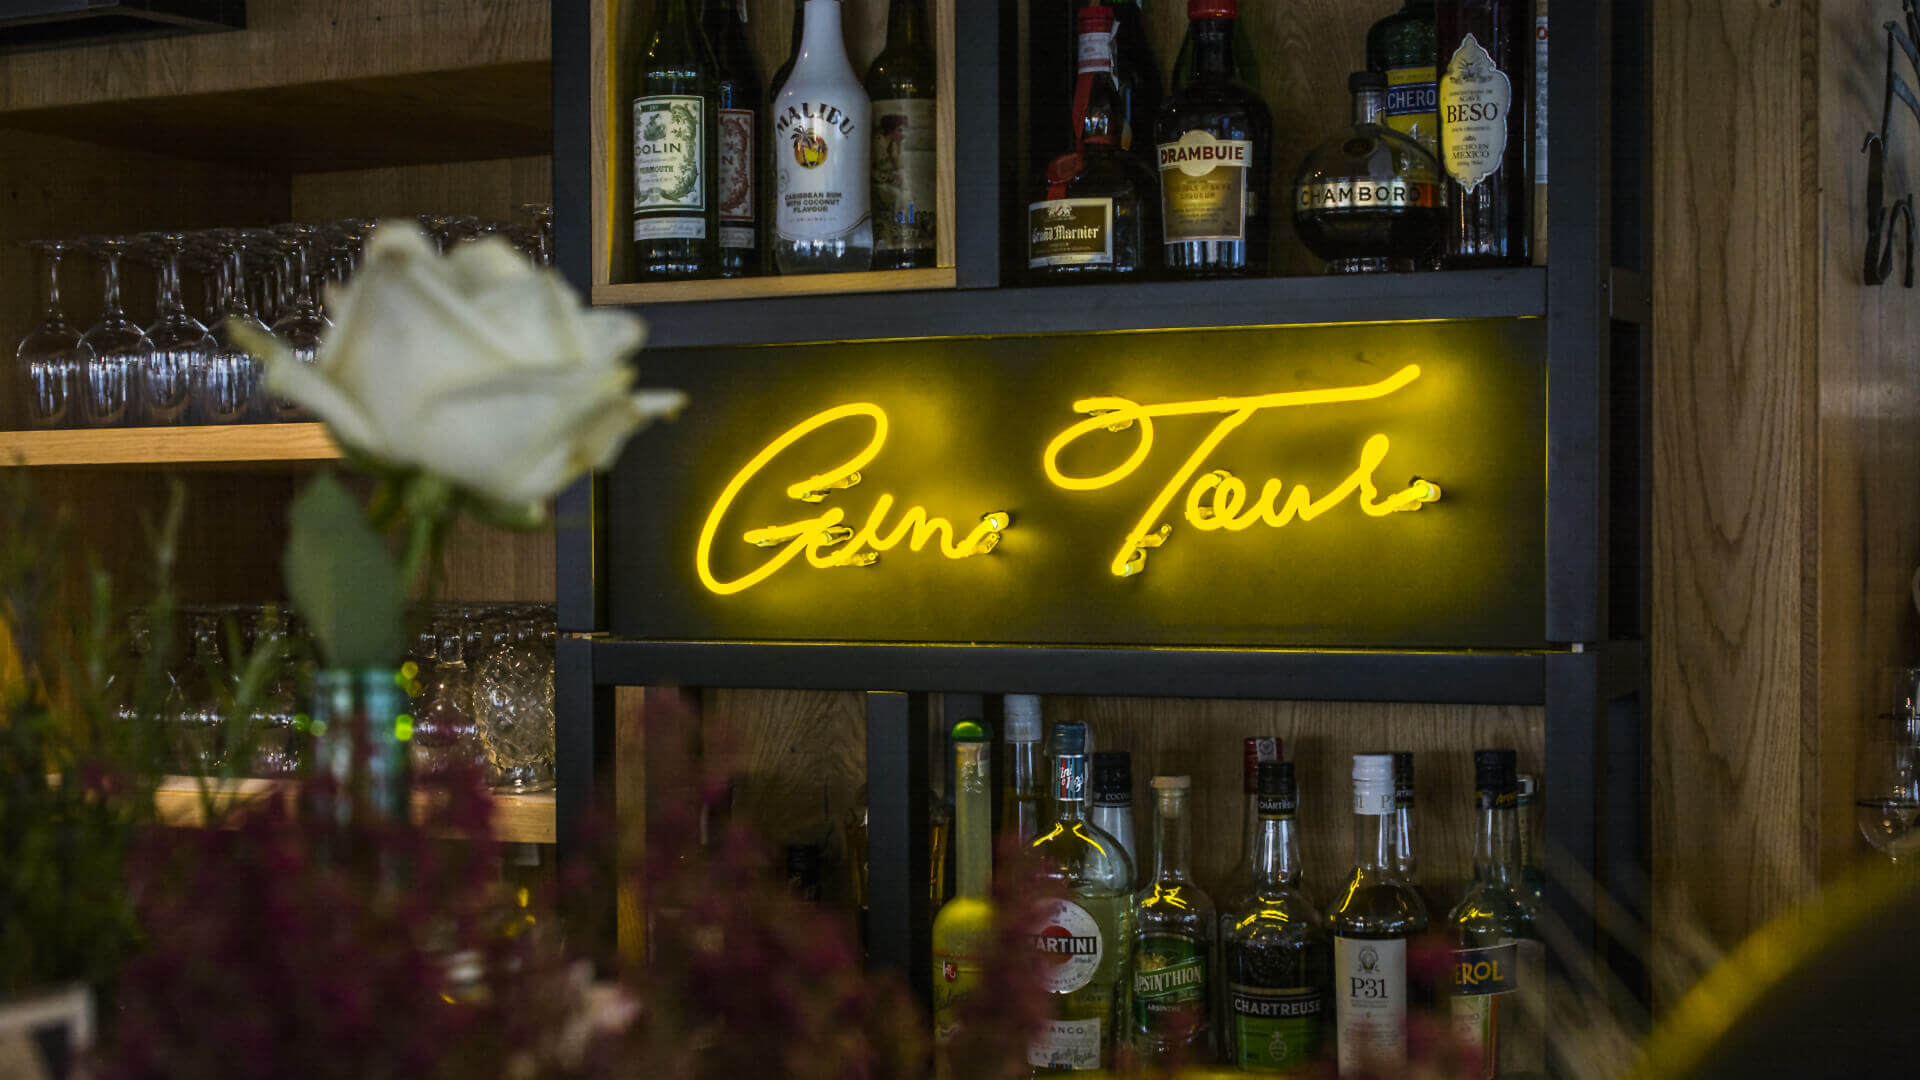 Gintur Gin tour - Gin-tour-neon-za-barem-w-restauracji-neon-na-scianie-podswietlany-na-zolto-szklany-neon-logo-firmowe-neon-na-polce-pomiedzy-butelkami-szafarnia10-gdansk (21).jpg